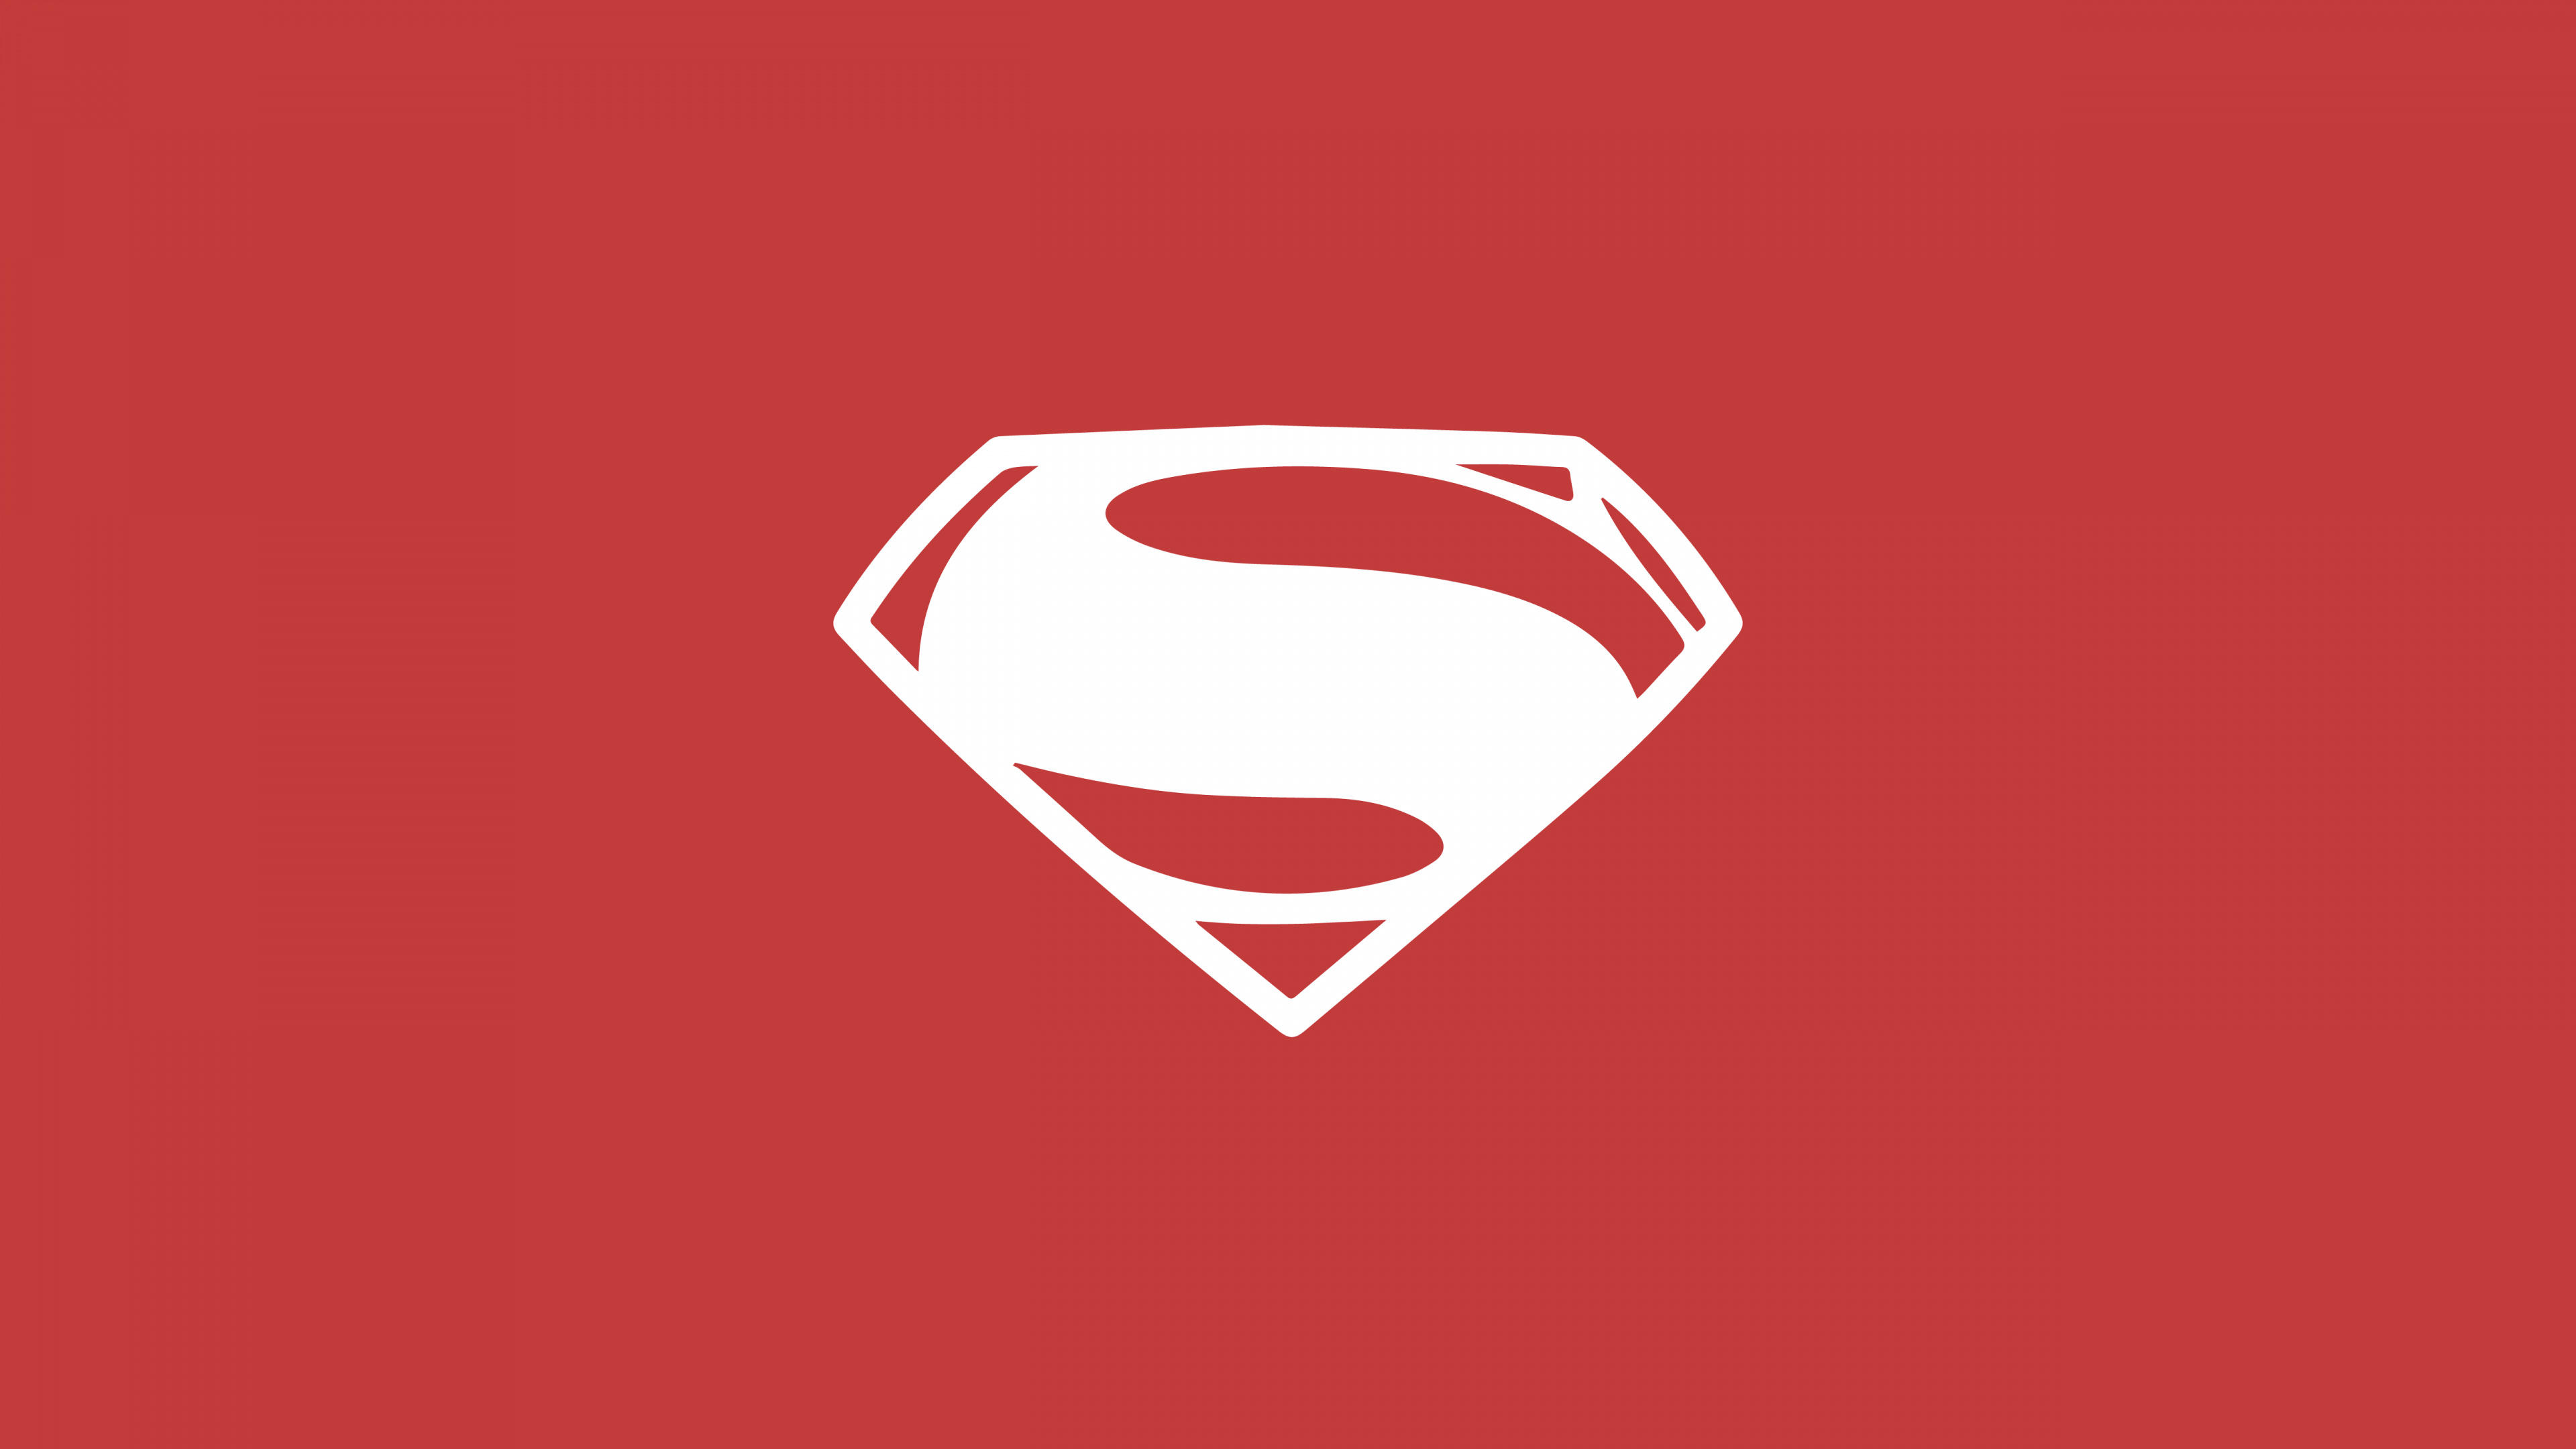 超人的标志, 红色的, 心脏, Dc漫画, 超级英雄 壁纸 3840x2160 允许